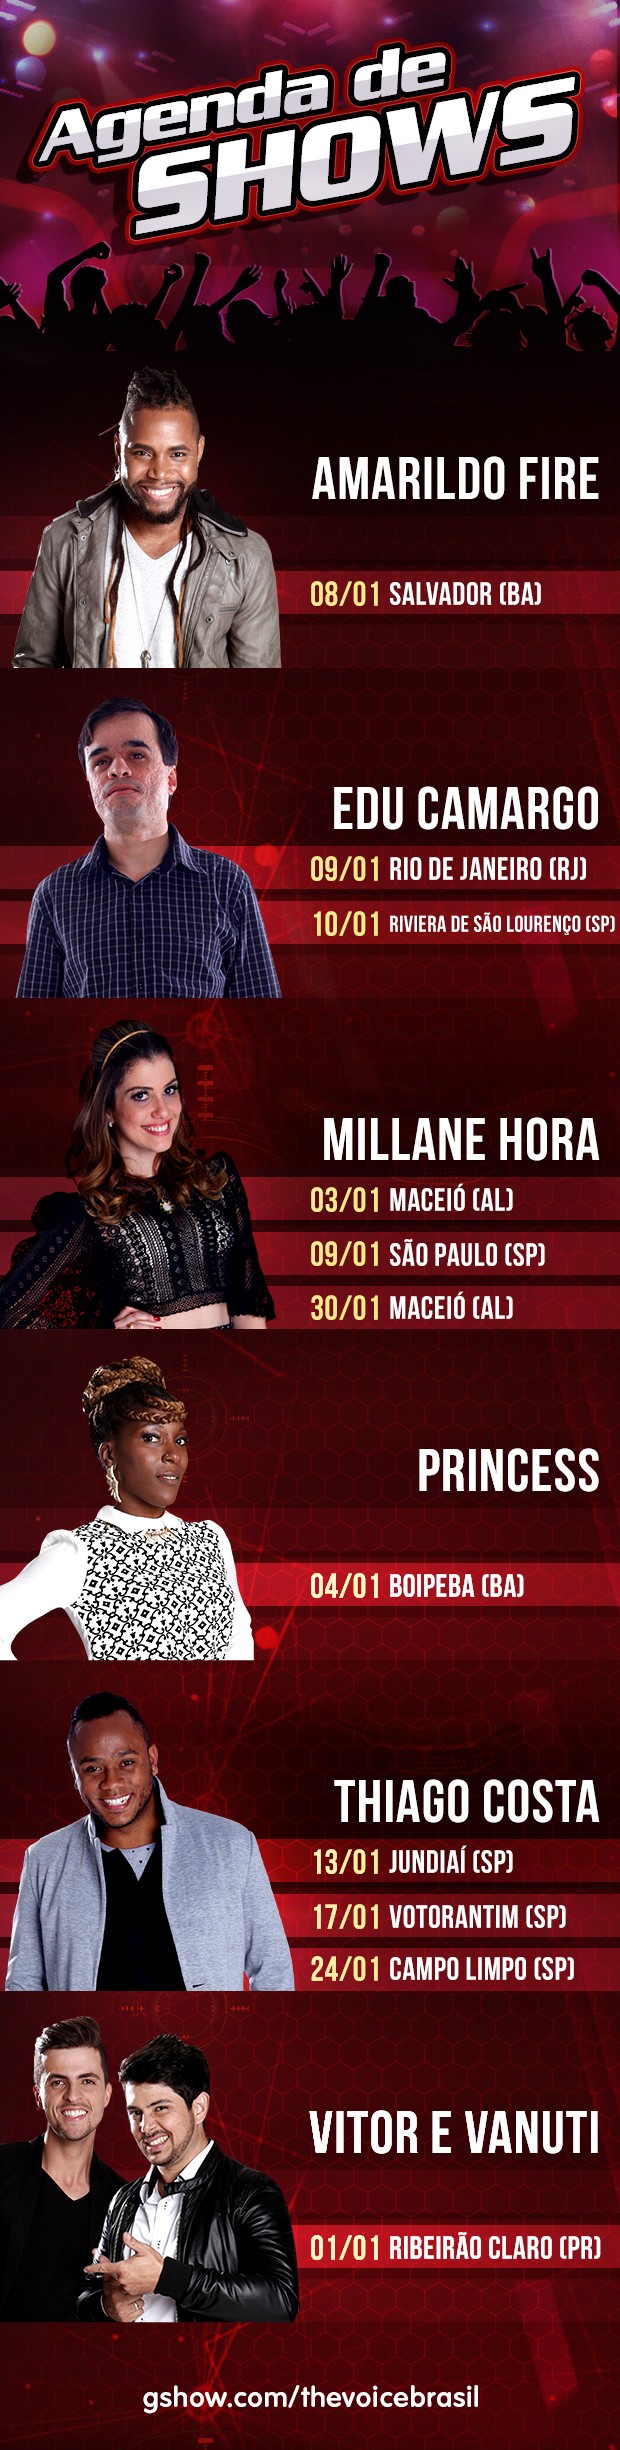 Agenda de shows para janeiro (Foto: The Voice Brasil)